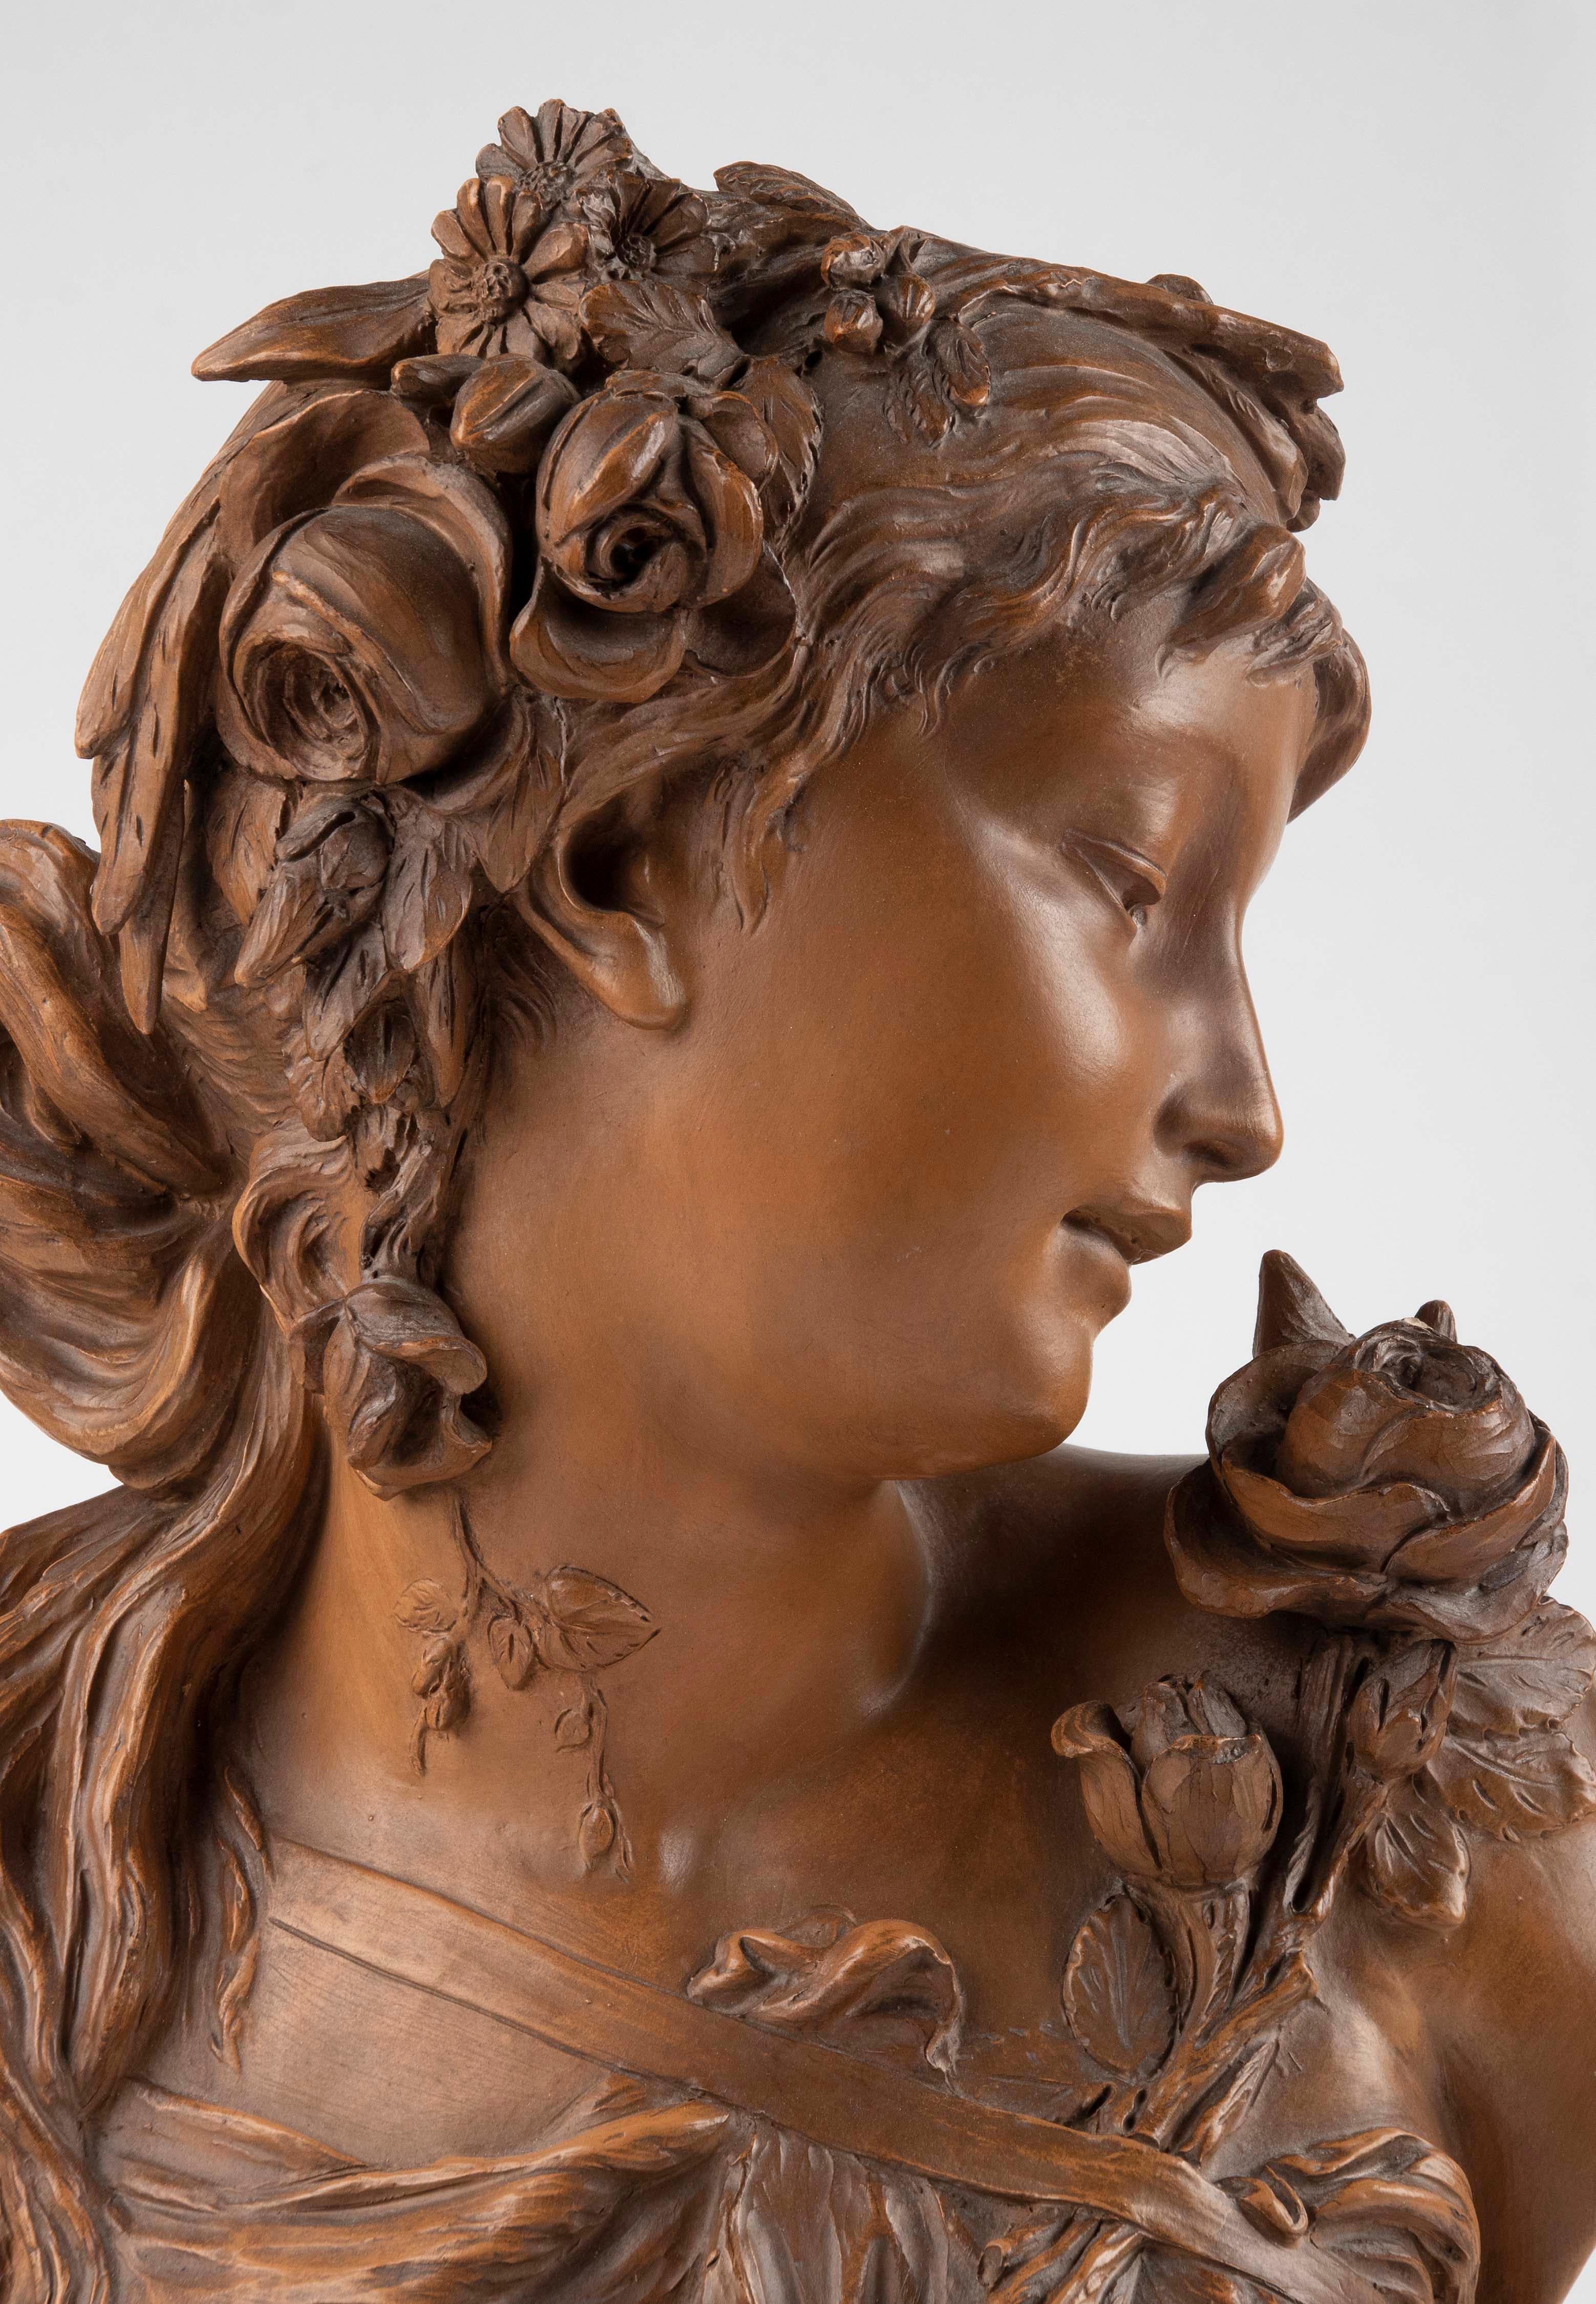 Romantique Sculpture en buste en terre cuite de la fin du 19e siècle représentant une personne de la classe moyenne.  Femme par Fréderick la Route en vente